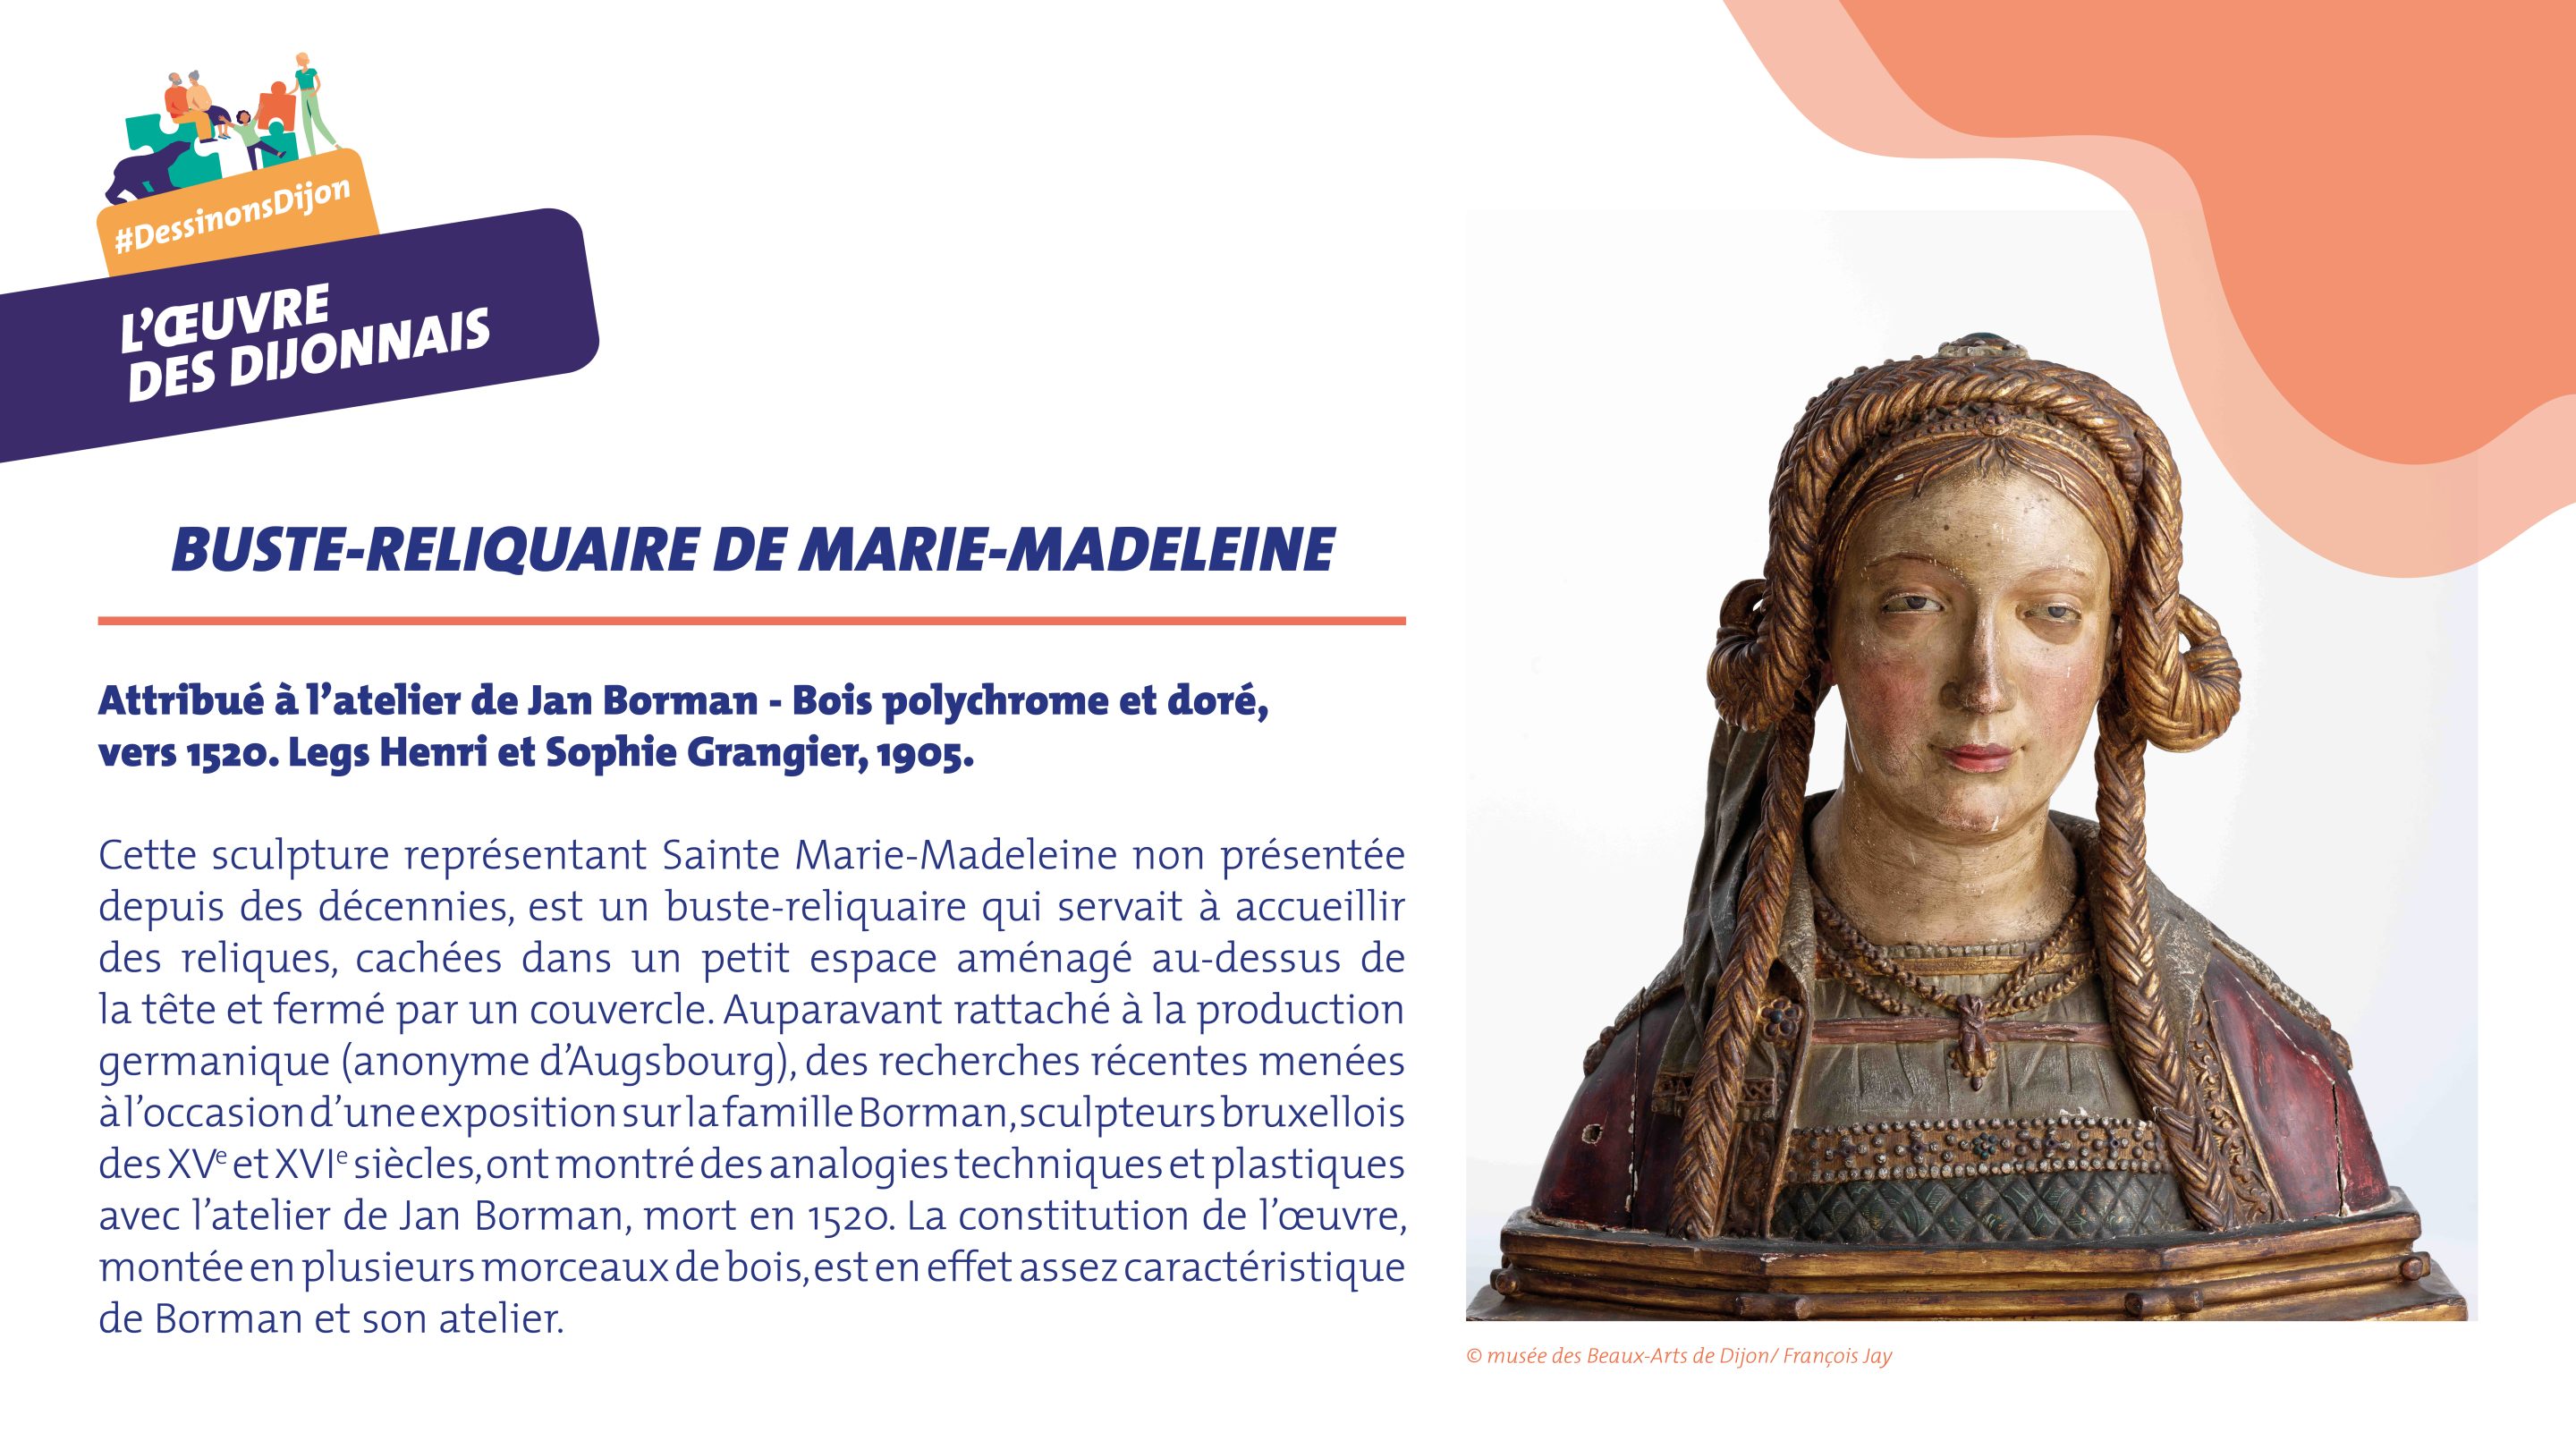 Buste-reliquaire de Marie-Madeleine, atelier de Jan Borman (1520)